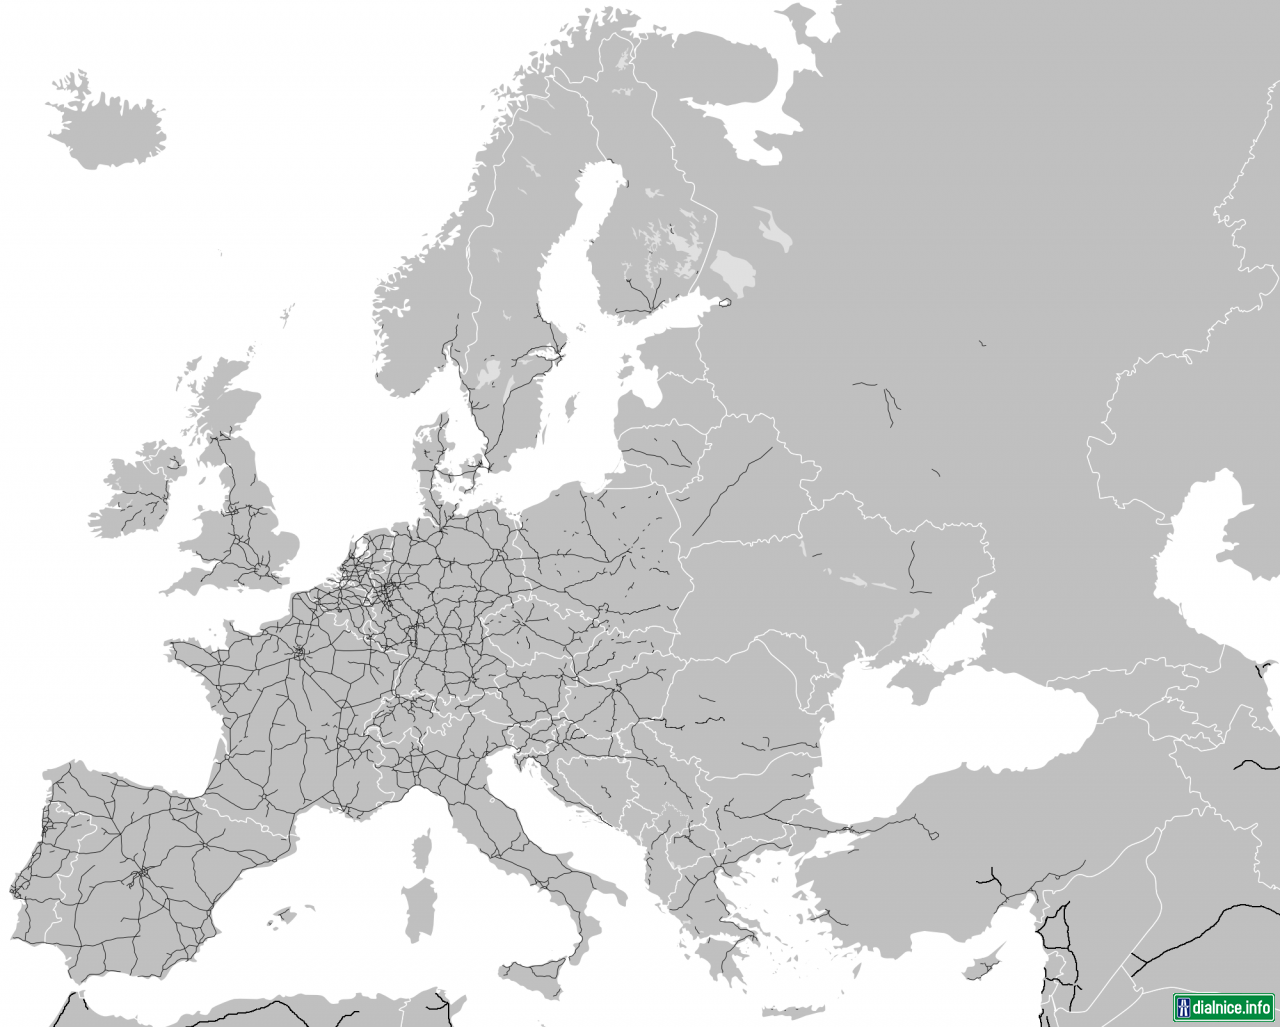 Sieť D/RC v Európe - December 2012